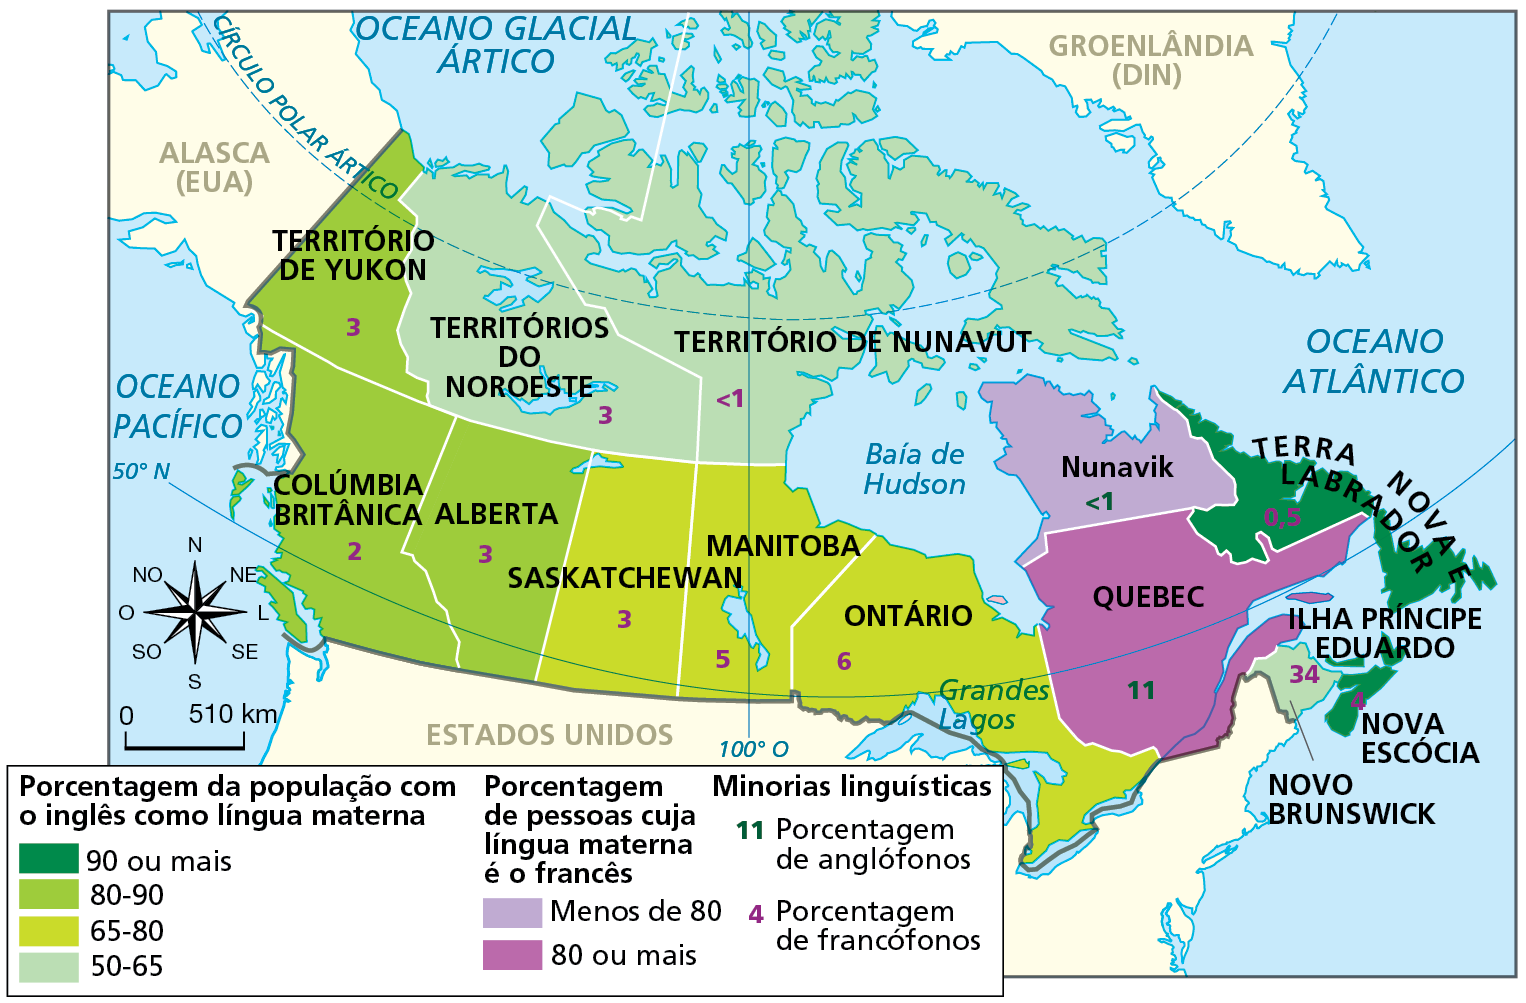 Mapa. Canadá: províncias e línguas. Mapa de parte da América do Norte com as províncias do Canadá, a porcentagem da população com o inglês e o francês como língua materna e a porcentagem da minoria linguística por província.  90 por cento ou mais da população com o inglês como língua materna: Terra Nova e Labrador, Ilha Príncipe Eduardo e Nova Escócia.  Em Terra Nova e Labrador, 0,5 por cento são francófonos e, em Nova Escócia, 4 por cento são francófonos. Entre 80 e 90 por cento com o inglês como língua materna: Alberta, Colúmbia Britânica e Território de Yukon.  Em Alberta, 3% são francófonos, em Colúmbia Britânica, 2% são francófonos e no Território de Yukon 3 por cento são francófonos. Entre 65 e 80 por cento com o inglês como língua materna: Saskatchewan, Manitoba e Ontário.  Em Saskatchewan, 3% são francófonos, em Manitoba, 5% são francófonos e em Ontário 6% são francófonos. Entre 50 e 65 por cento com o inglês como língua materna: Territórios do Noroeste, Território de Nunavut e Novo Brunswick. Nos Territórios do Noroeste, 3% são francófonos. No Território de Nunavut, menos de 1% são francófonos e em Novo Brunswick, 34% são francófonos. Menos de 80 por cento com o francês como língua materna: Nunavik. 80 por cento ou mais com o francês como língua materna: Quebec.  Em Nunavik, menos de 1% é anglófono e em Quebec 11% é anglófono. À esquerda, rosa dos ventos e escala de 0 a 510 quilômetros.